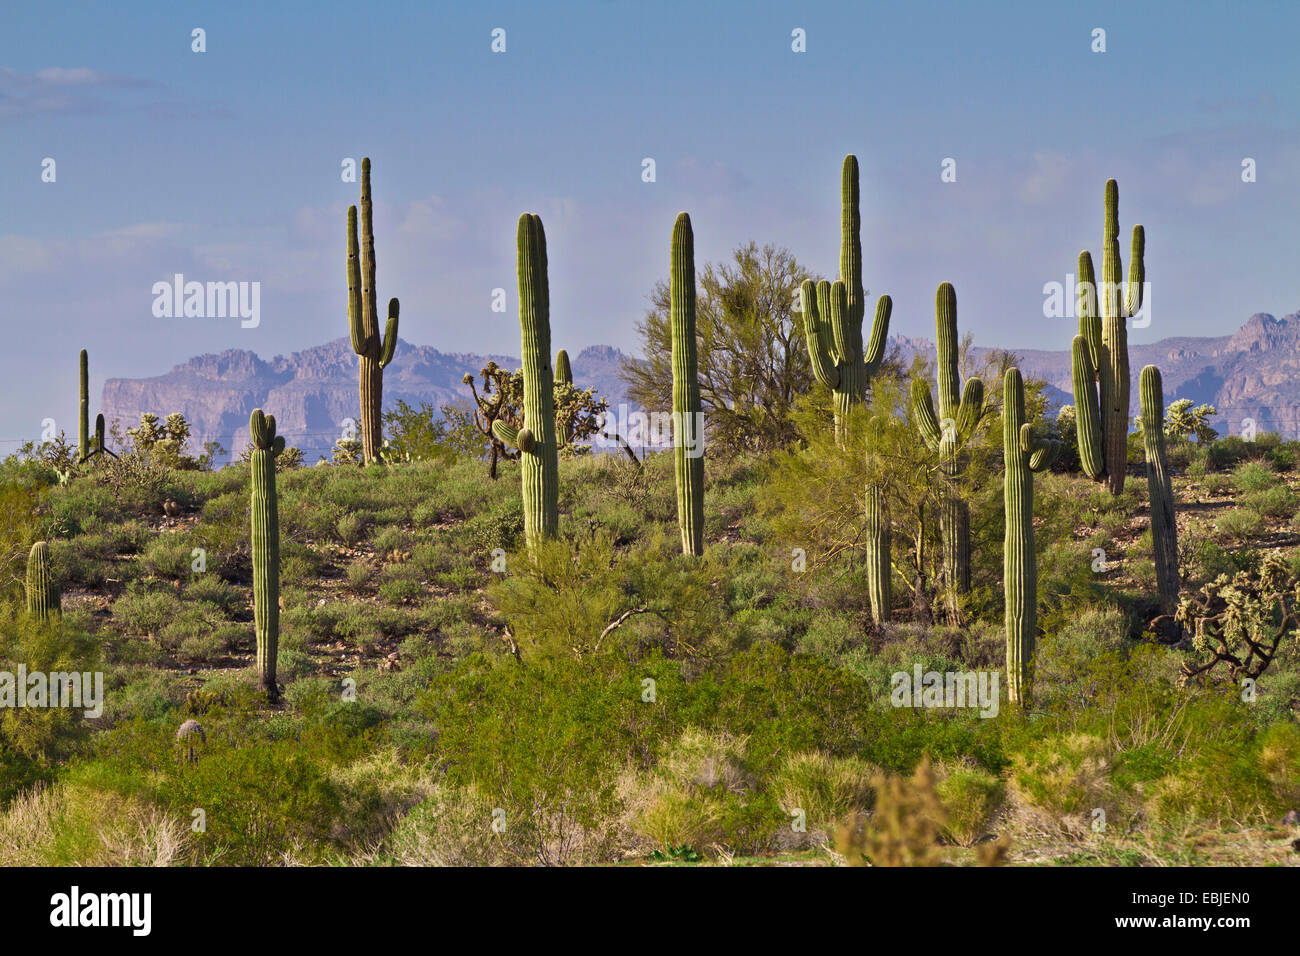 saguaro cactus (Carnegiea gigantea, Cereus giganteus), in Sonora desert, USA Stock Photo